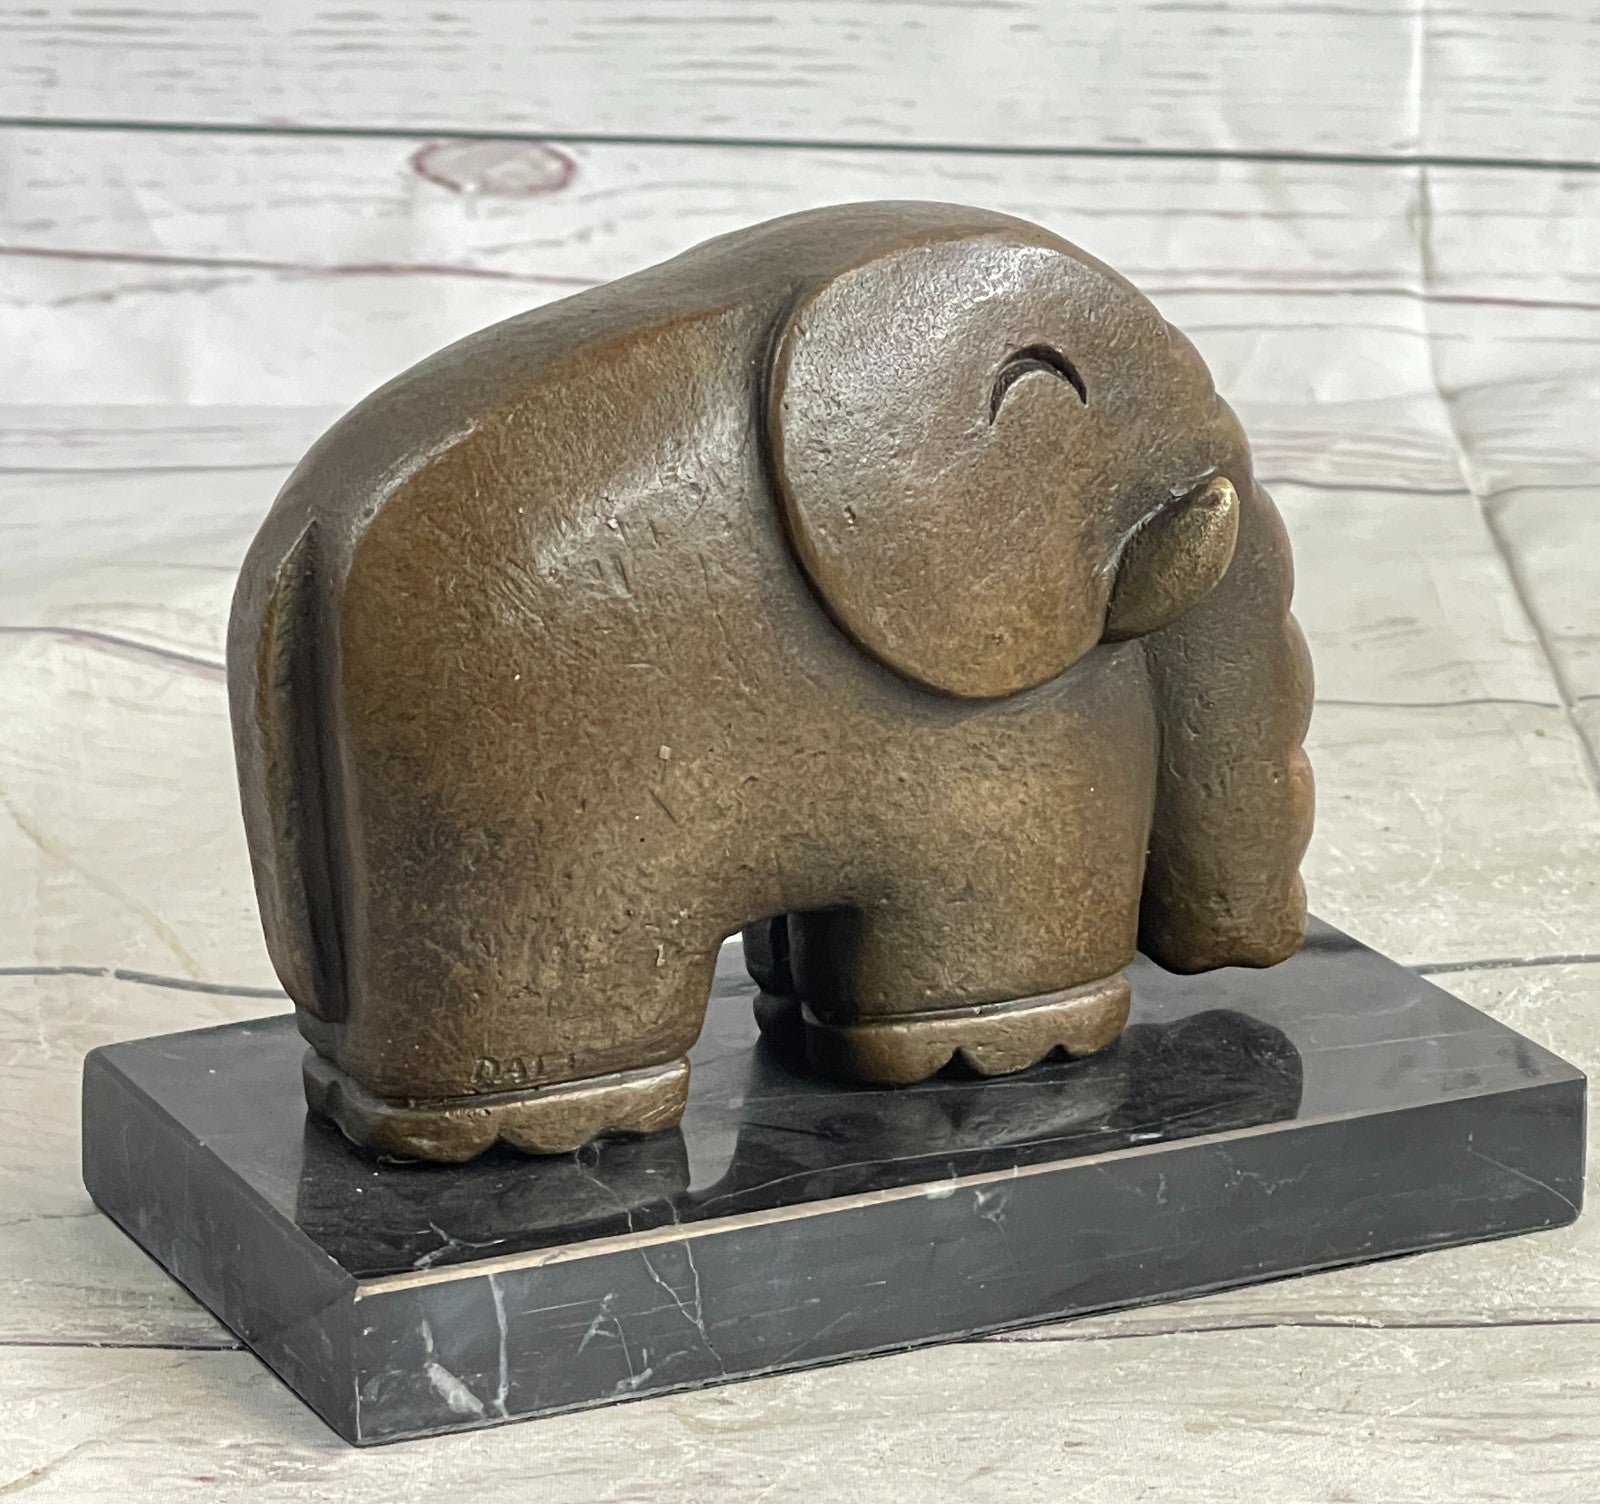 Hot Cast Salvador Dali Abstract Modern Art Elephant Bronze Sculpture Figurine NR